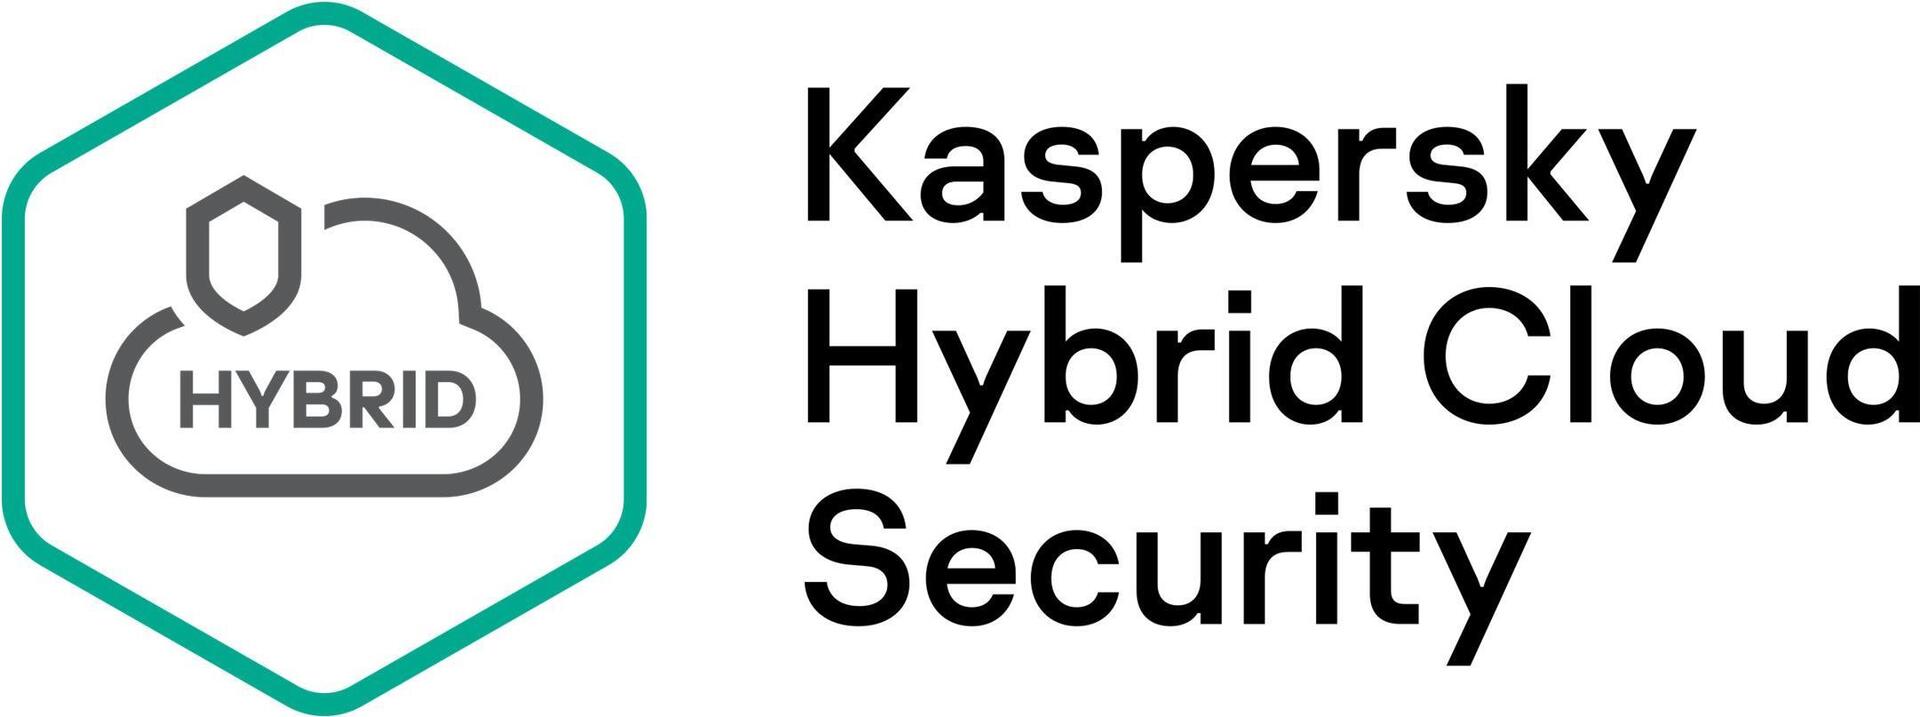 Kaspersky Hybrid Cloud Security Enterprise Edition, Desktop (KL4153XAQDR)